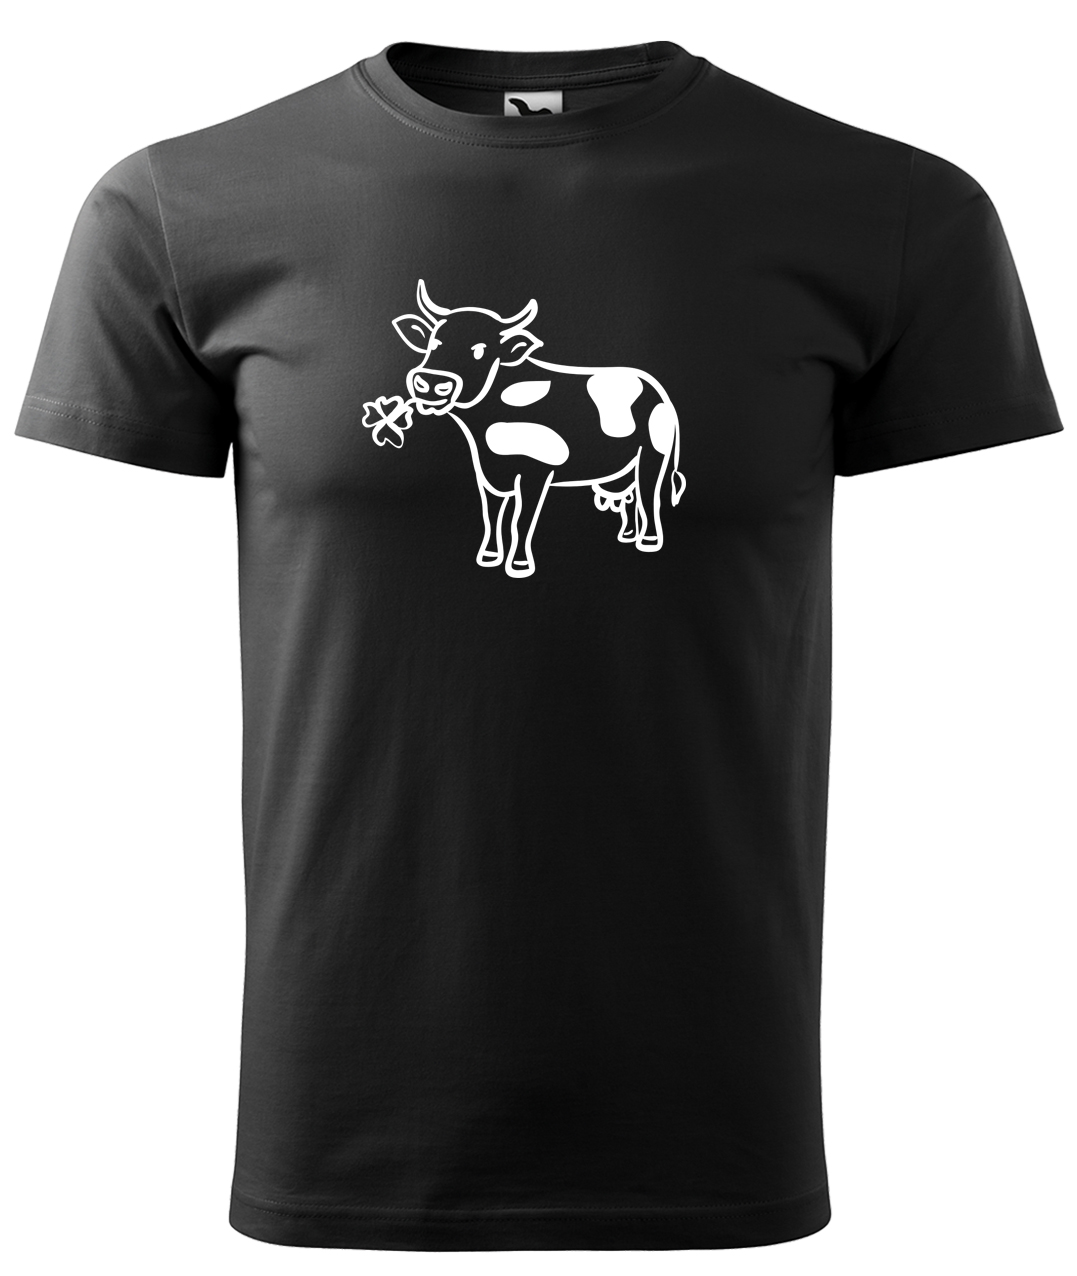 Dětské tričko s krávou - Kravička a jetel Velikost: 4 roky / 110 cm, Barva: Černá (01), Délka rukávu: Krátký rukáv